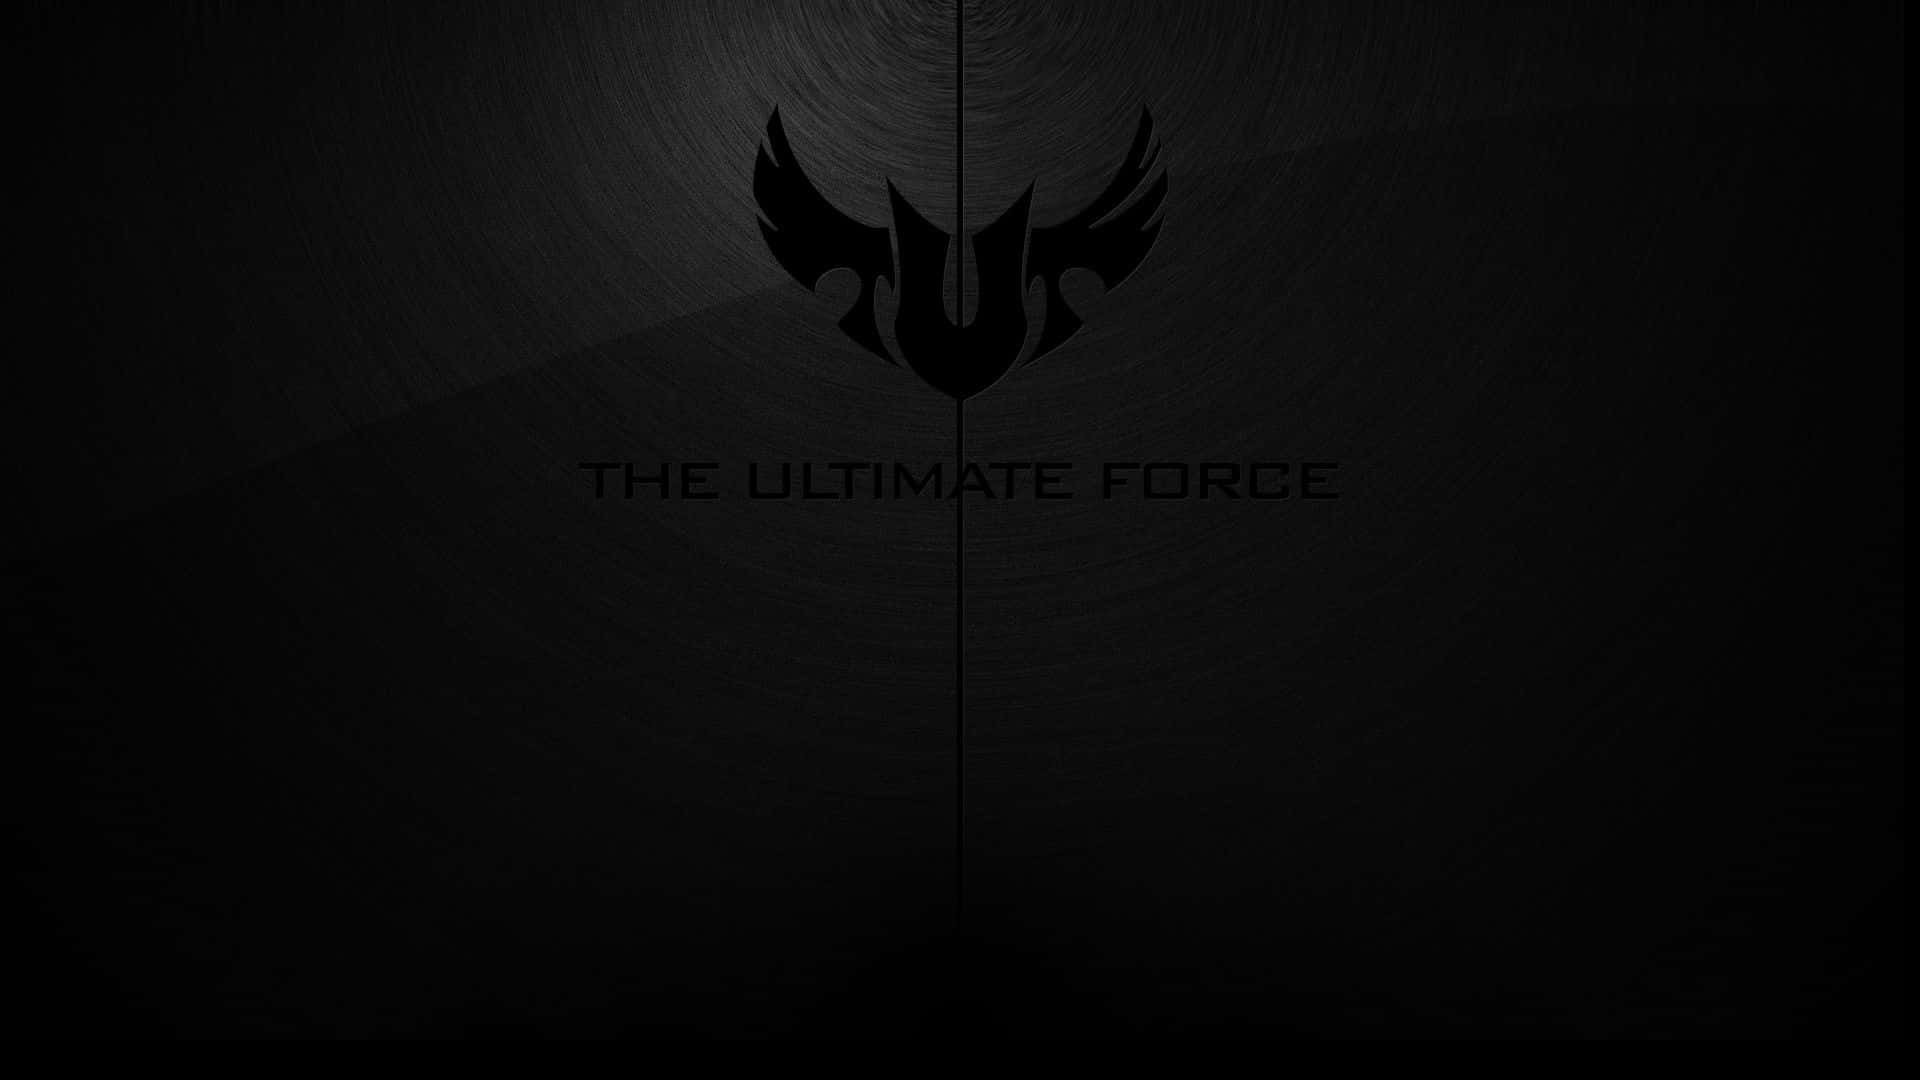 Asus T U F Ultimate Force Logo Wallpaper